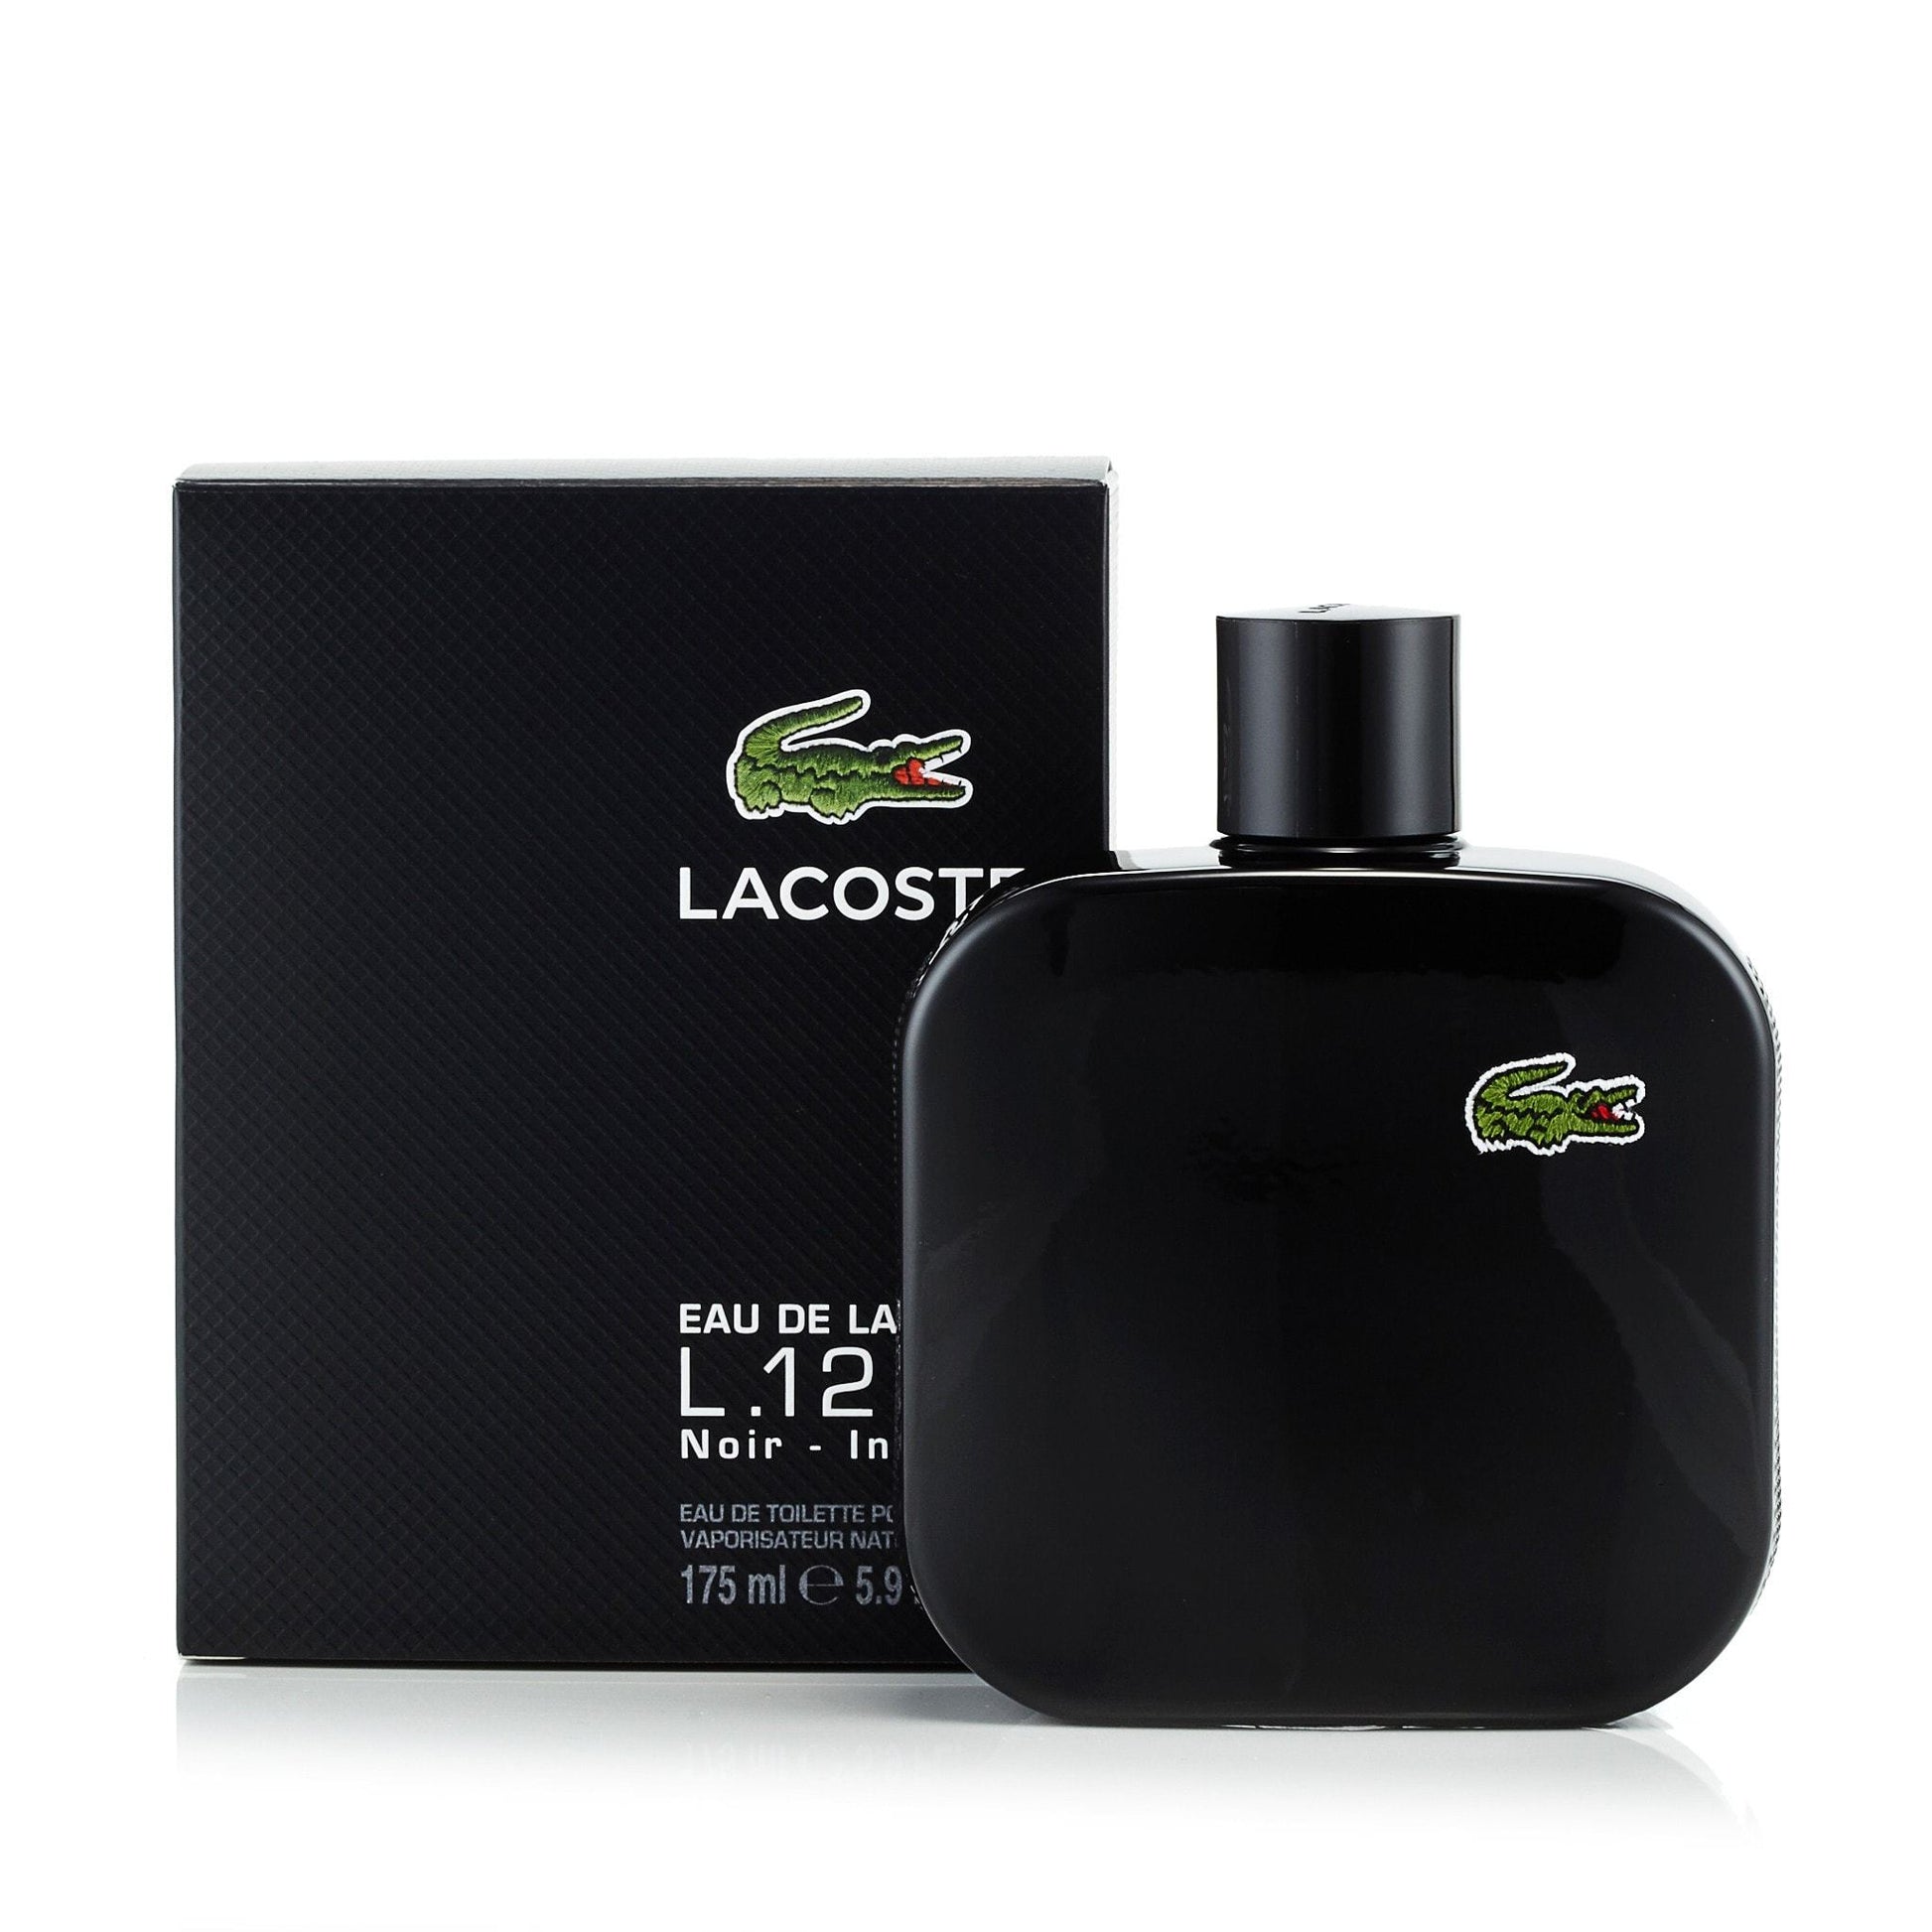 L.12.12 Noir Eau de Toilette Spray for Men by Lacoste, Product image 10